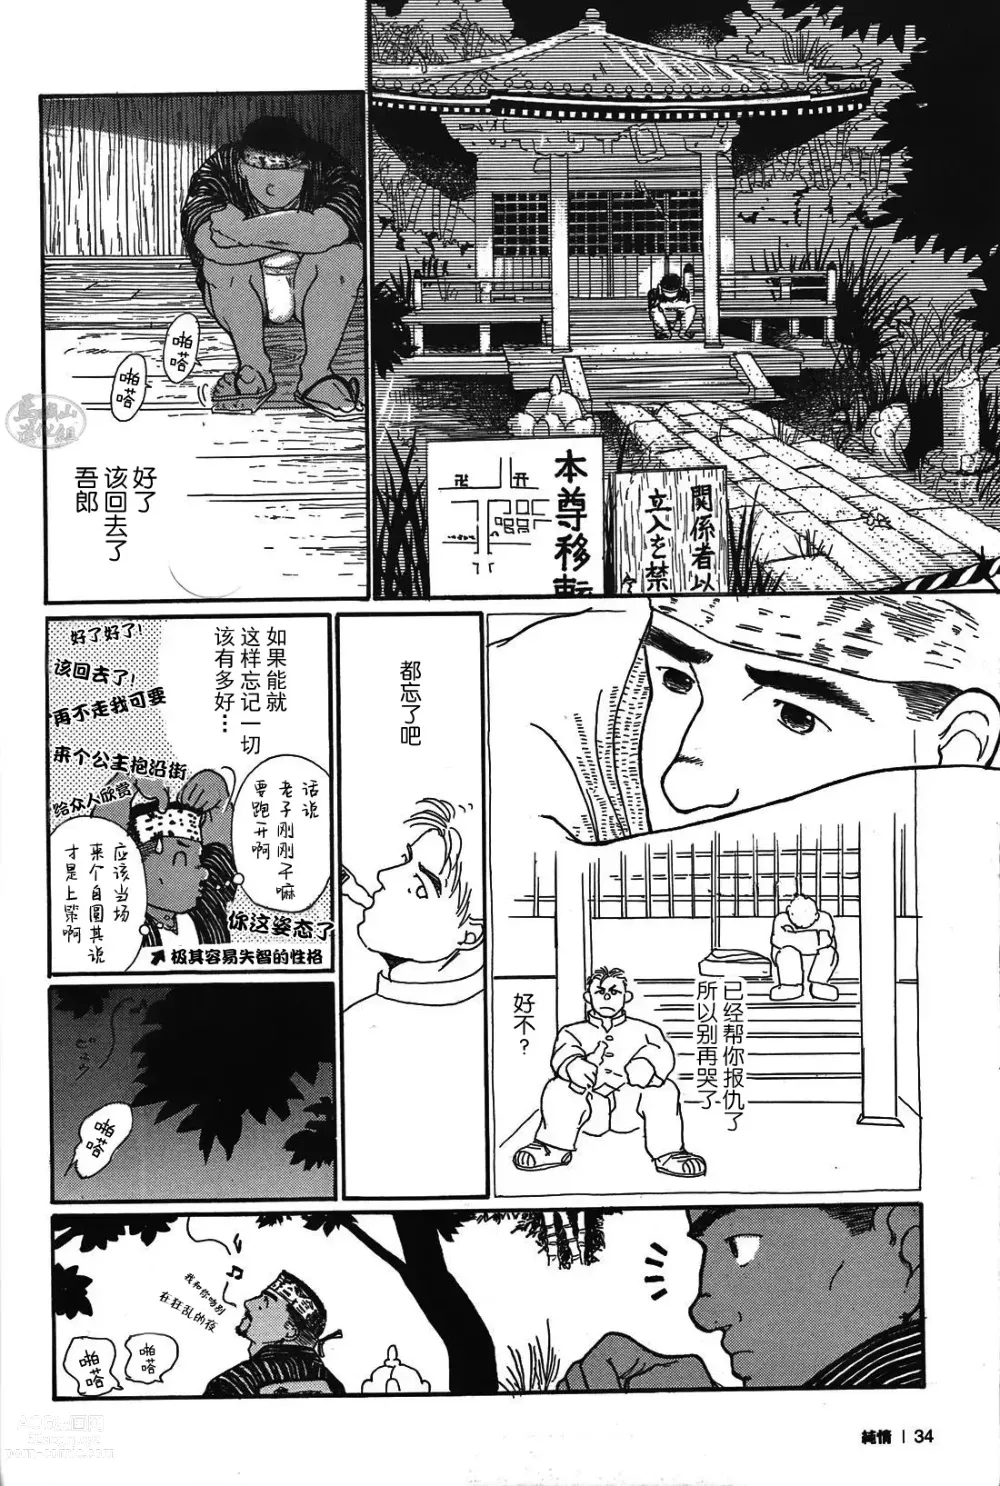 Page 33 of manga 纯情!! 第一章 「纯情」